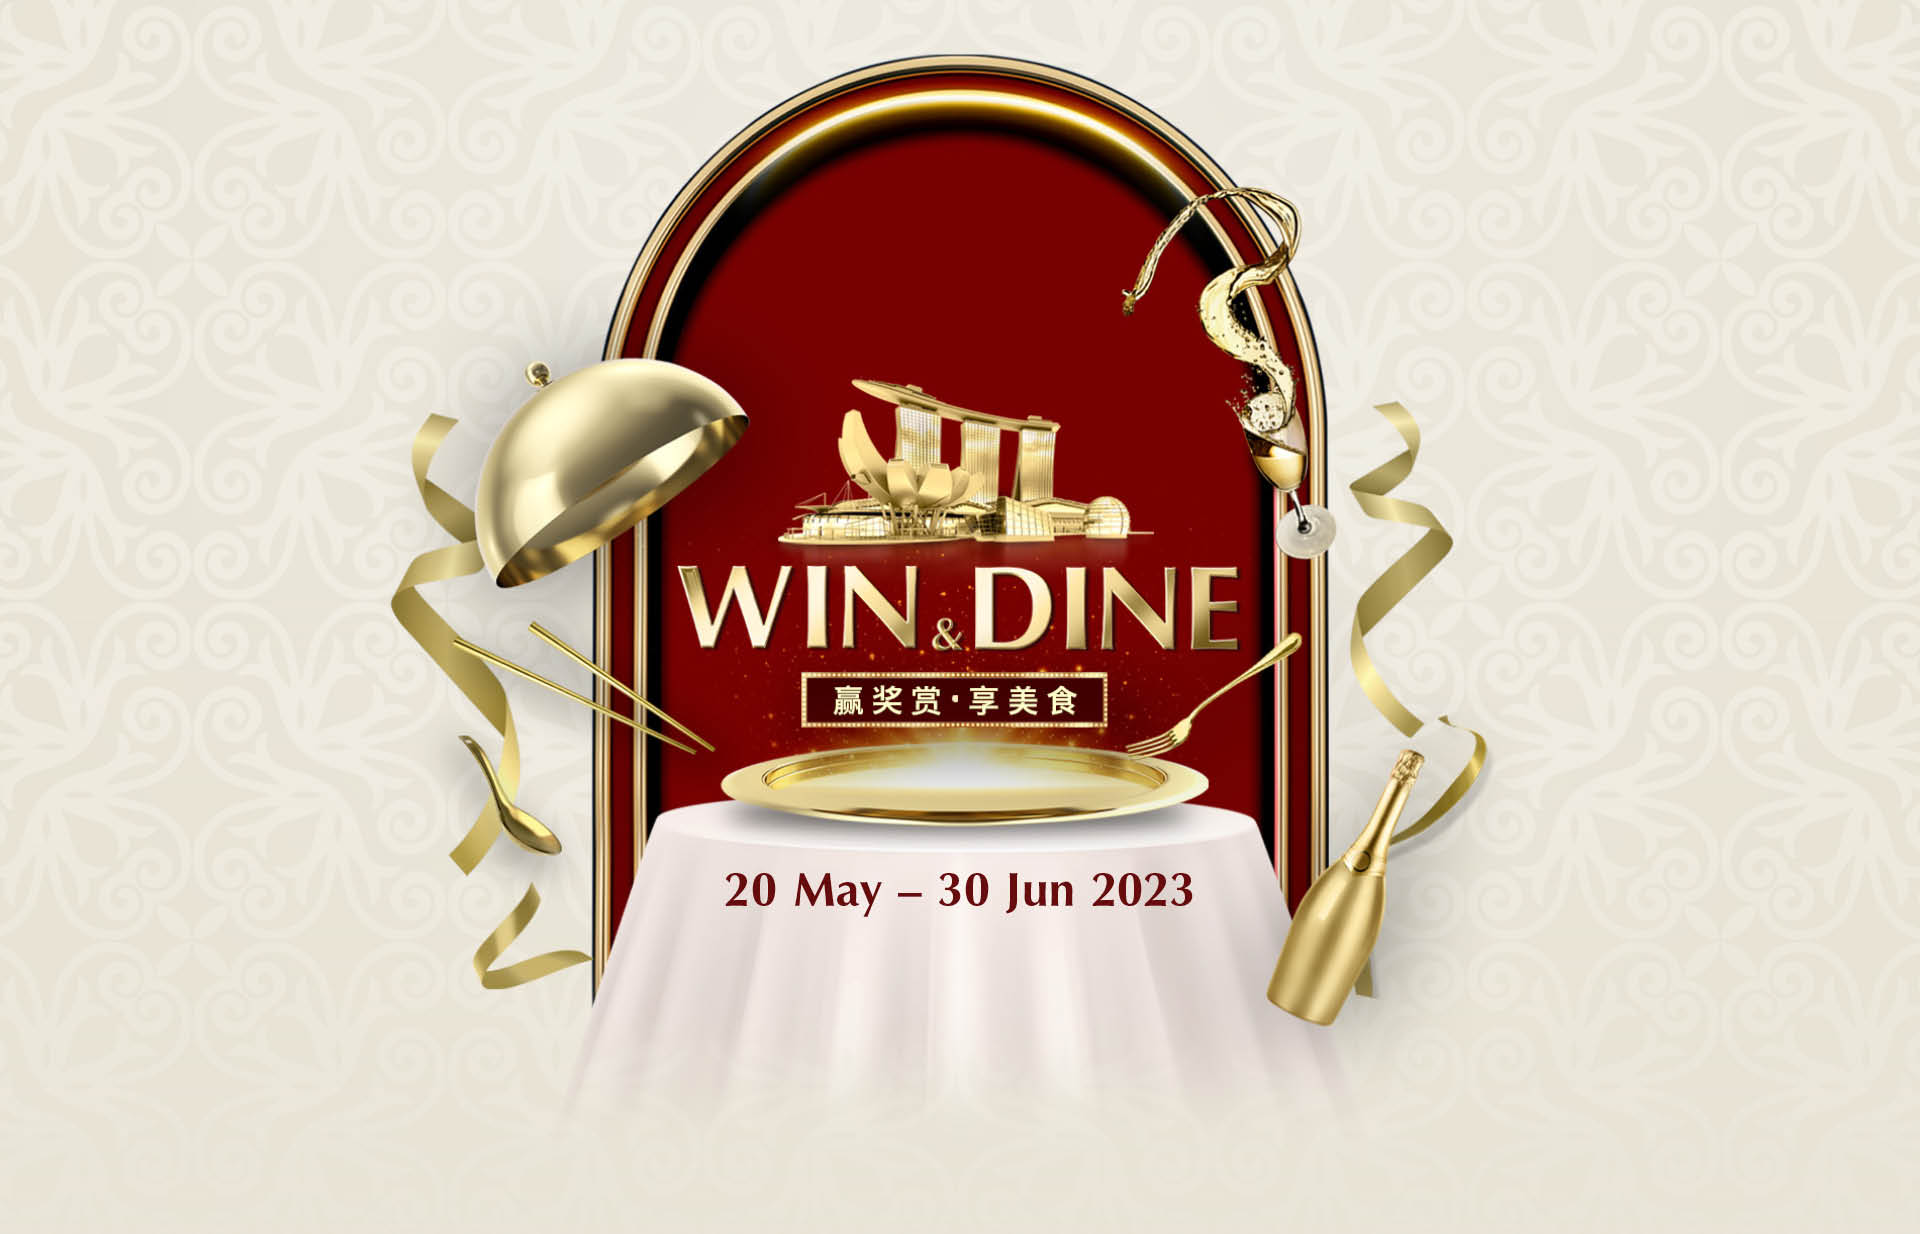 DINE & WIN 2023